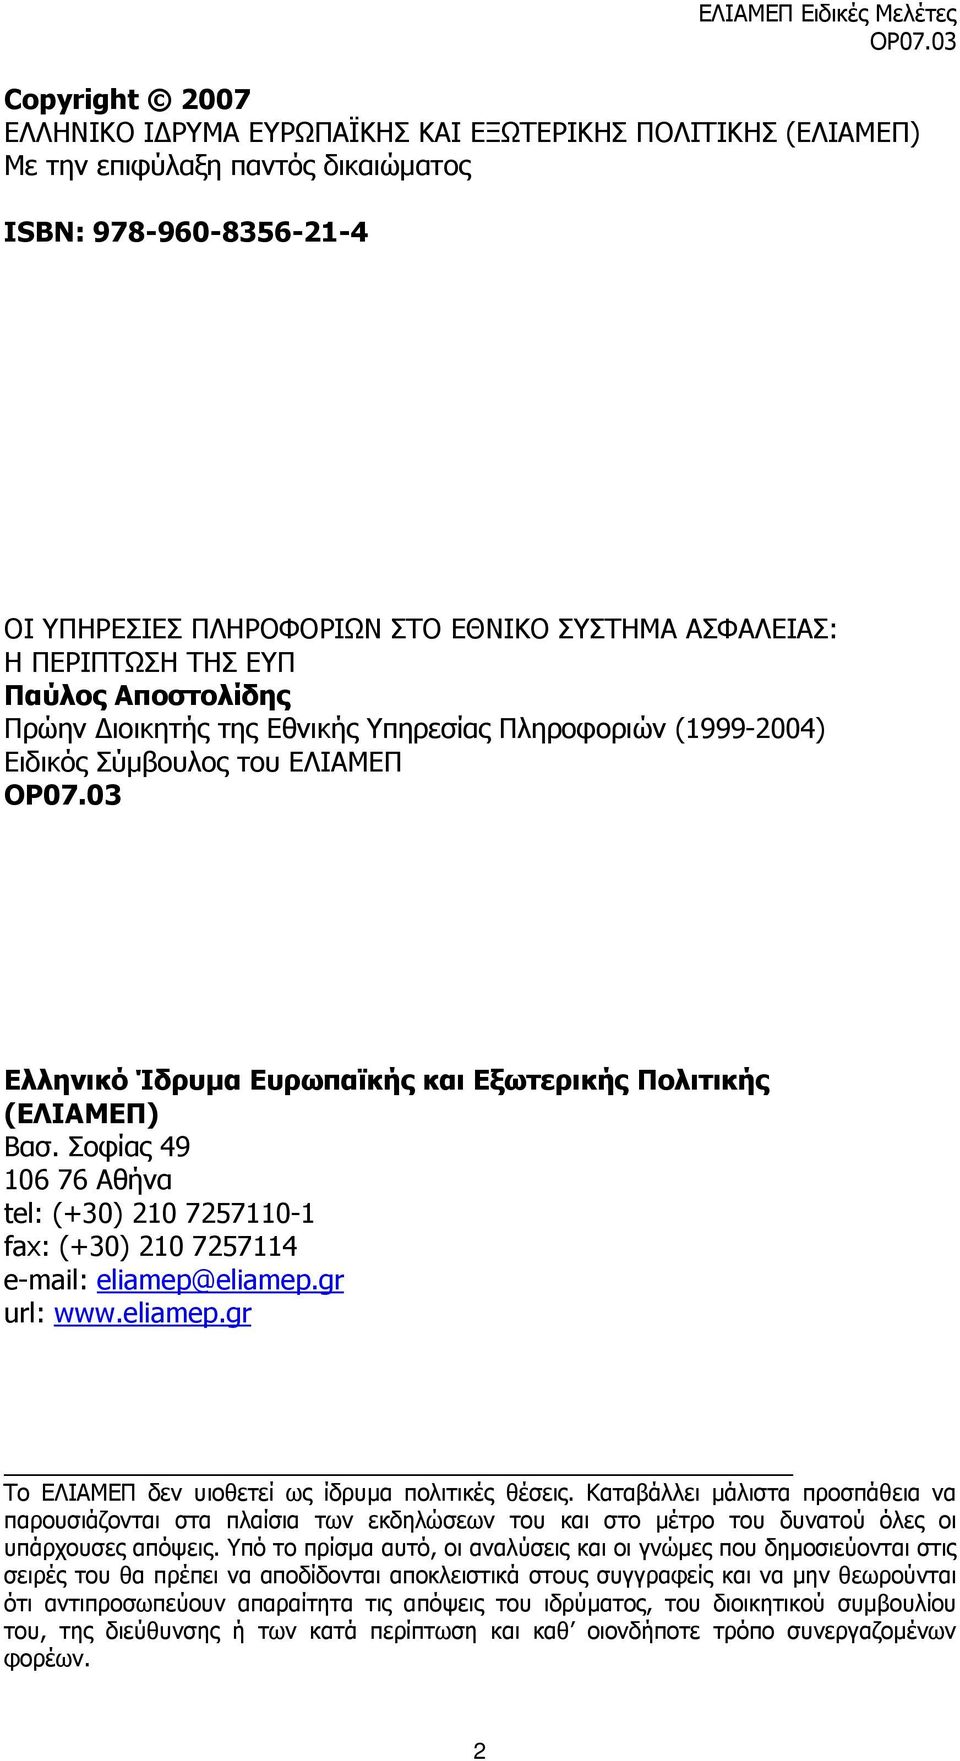 03 Ελληνικό Ίδρυµα Ευρωπαϊκής και Εξωτερικής Πολιτικής (ΕΛΙΑΜΕΠ) Βασ. Σοφίας 49 106 76 Αθήνα tel: (+30) 210 7257110-1 fax: (+30) 210 7257114 e-mail: eliamep@